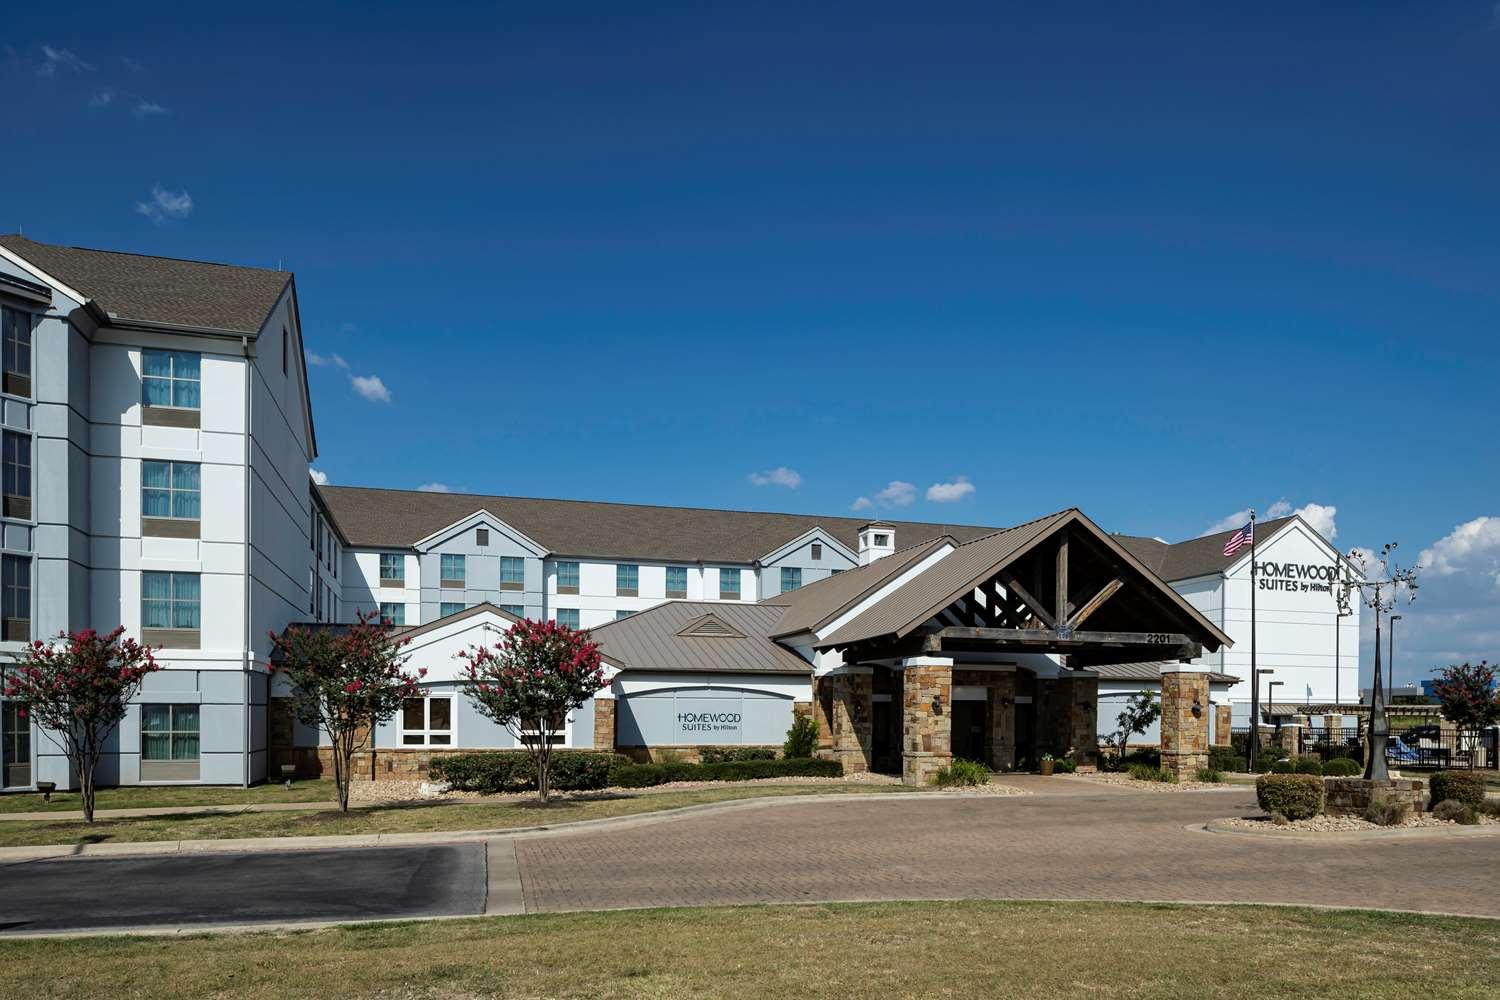 Homewood Suites by Hilton Austin/Round Rock, TX in Round Rock, TX